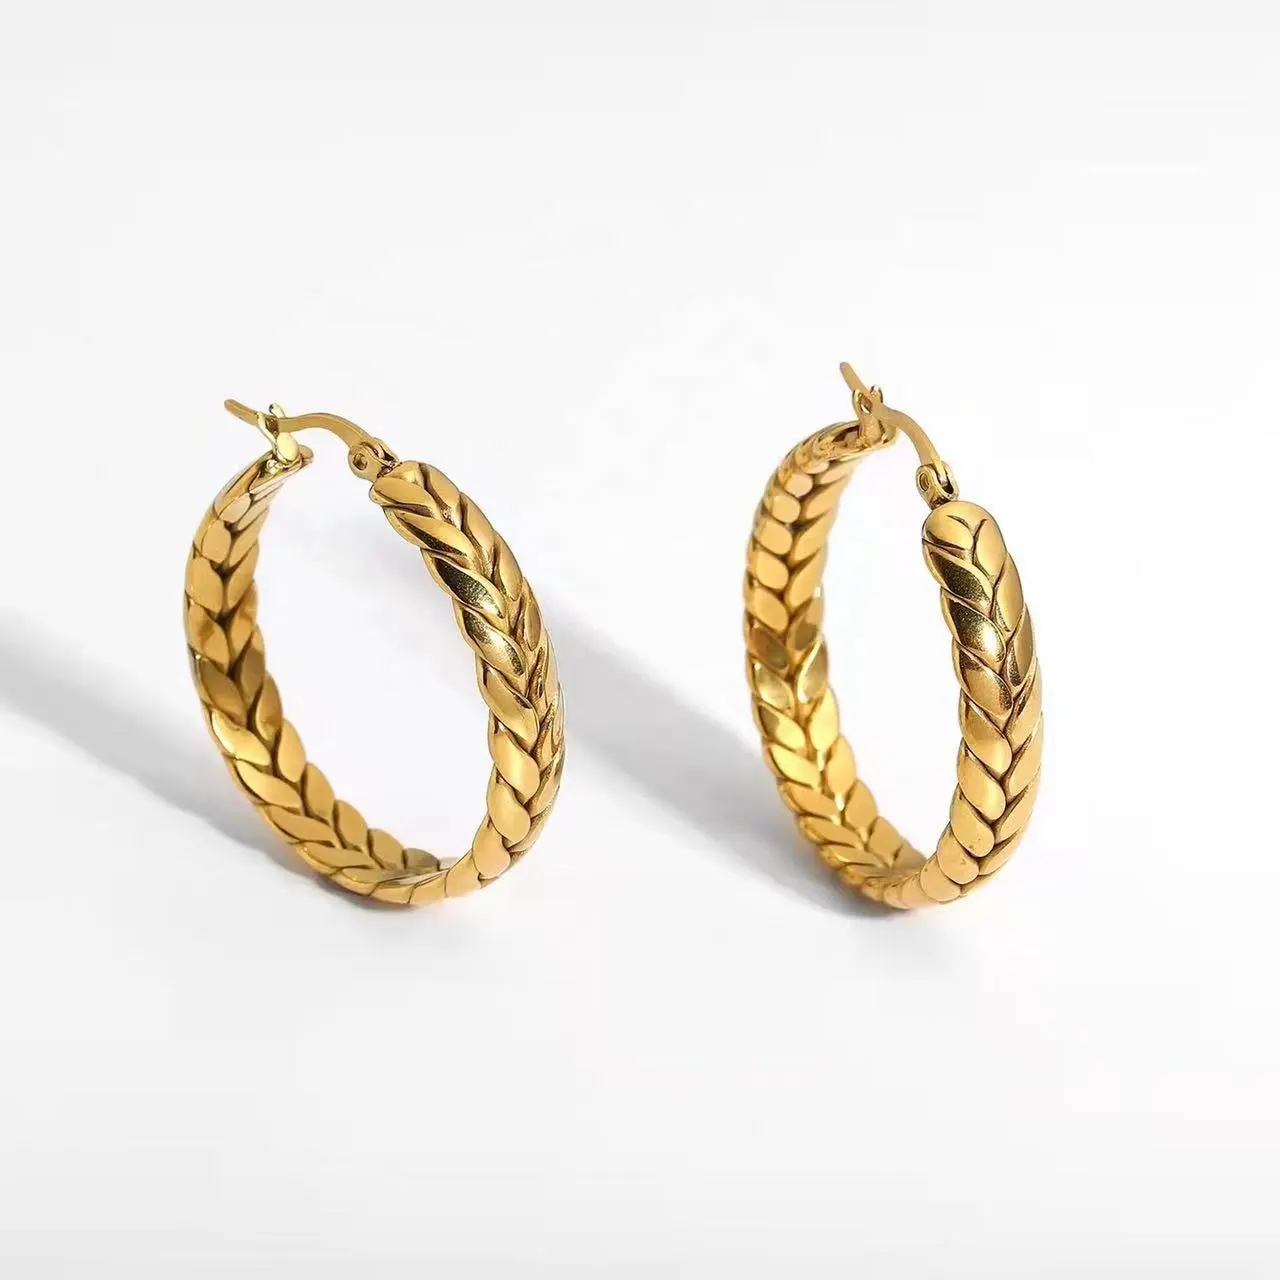 Modern Bohemian Woven Stainless Steel 18k Gold Hoop Earring For Women Boho Elegant Dangle Earrings Jewelry Wholesale Dropship Popular jewelry